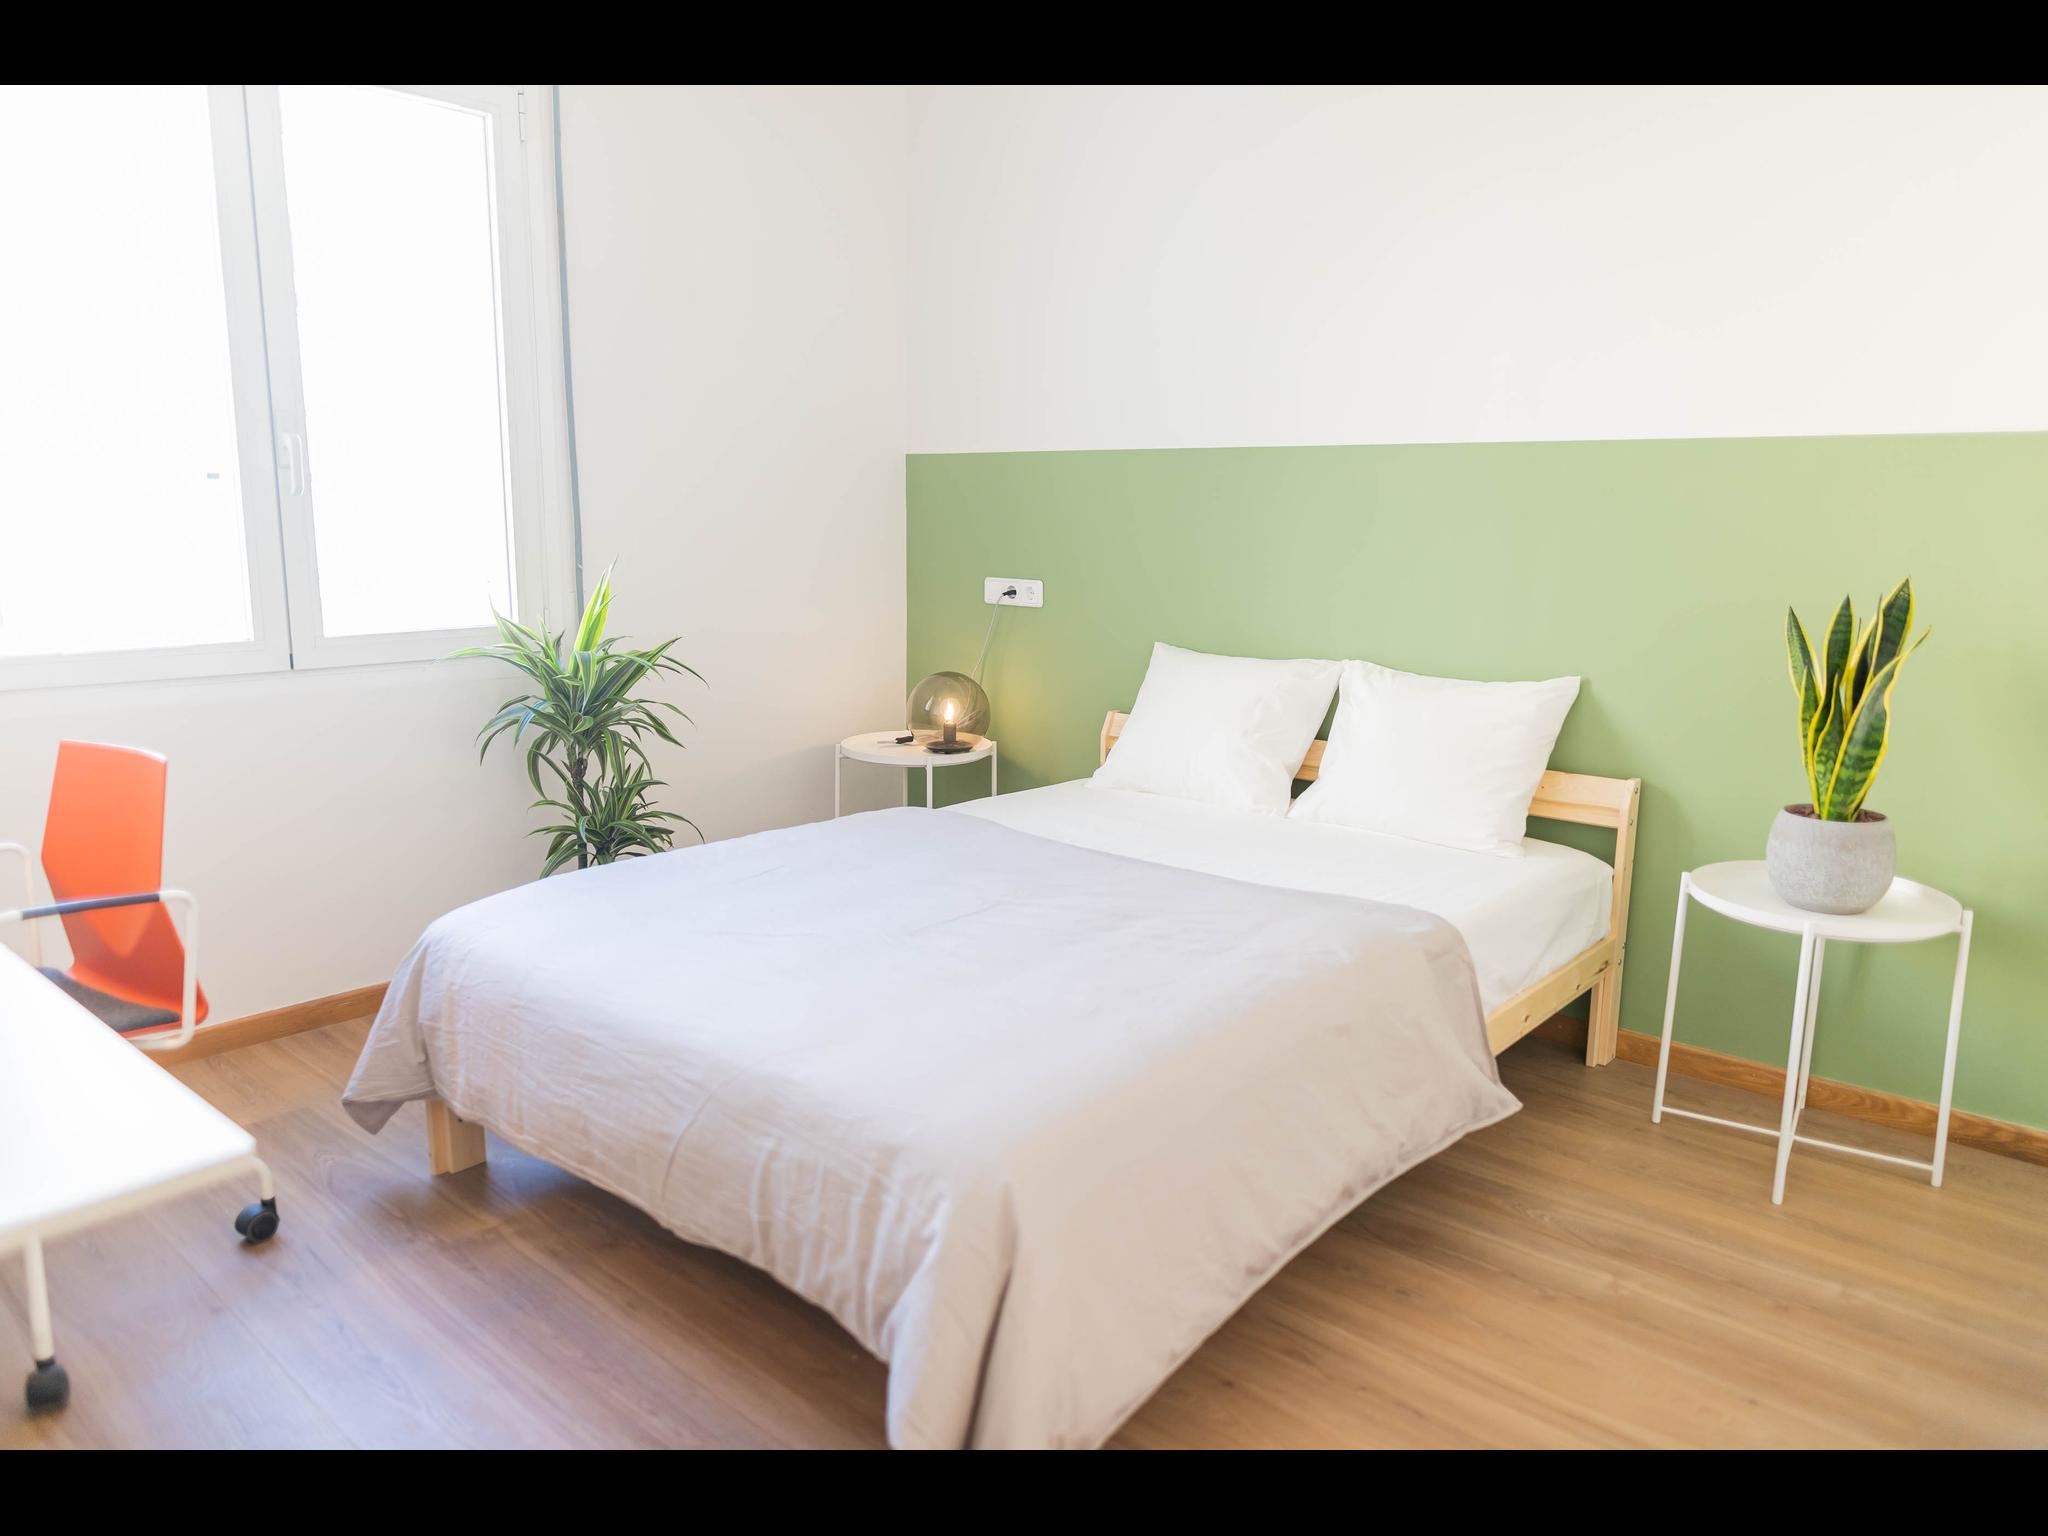 Travessera - Apartamento compartido en Barcelona